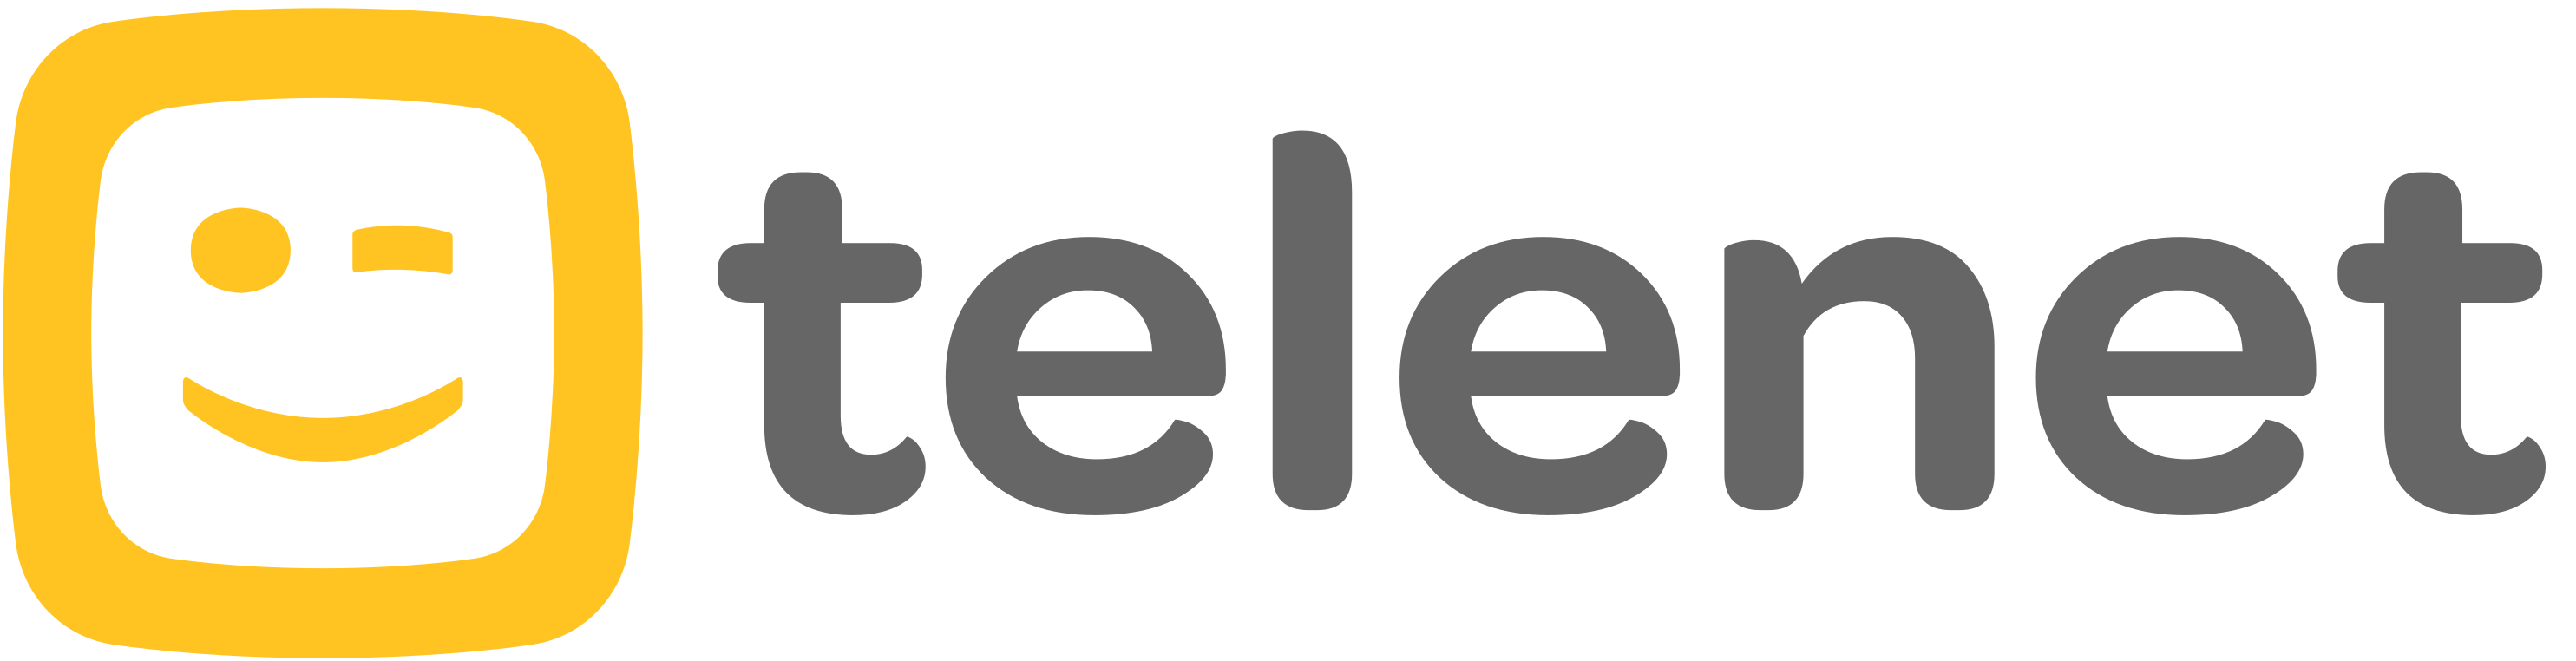 Telenet Belgium Logo